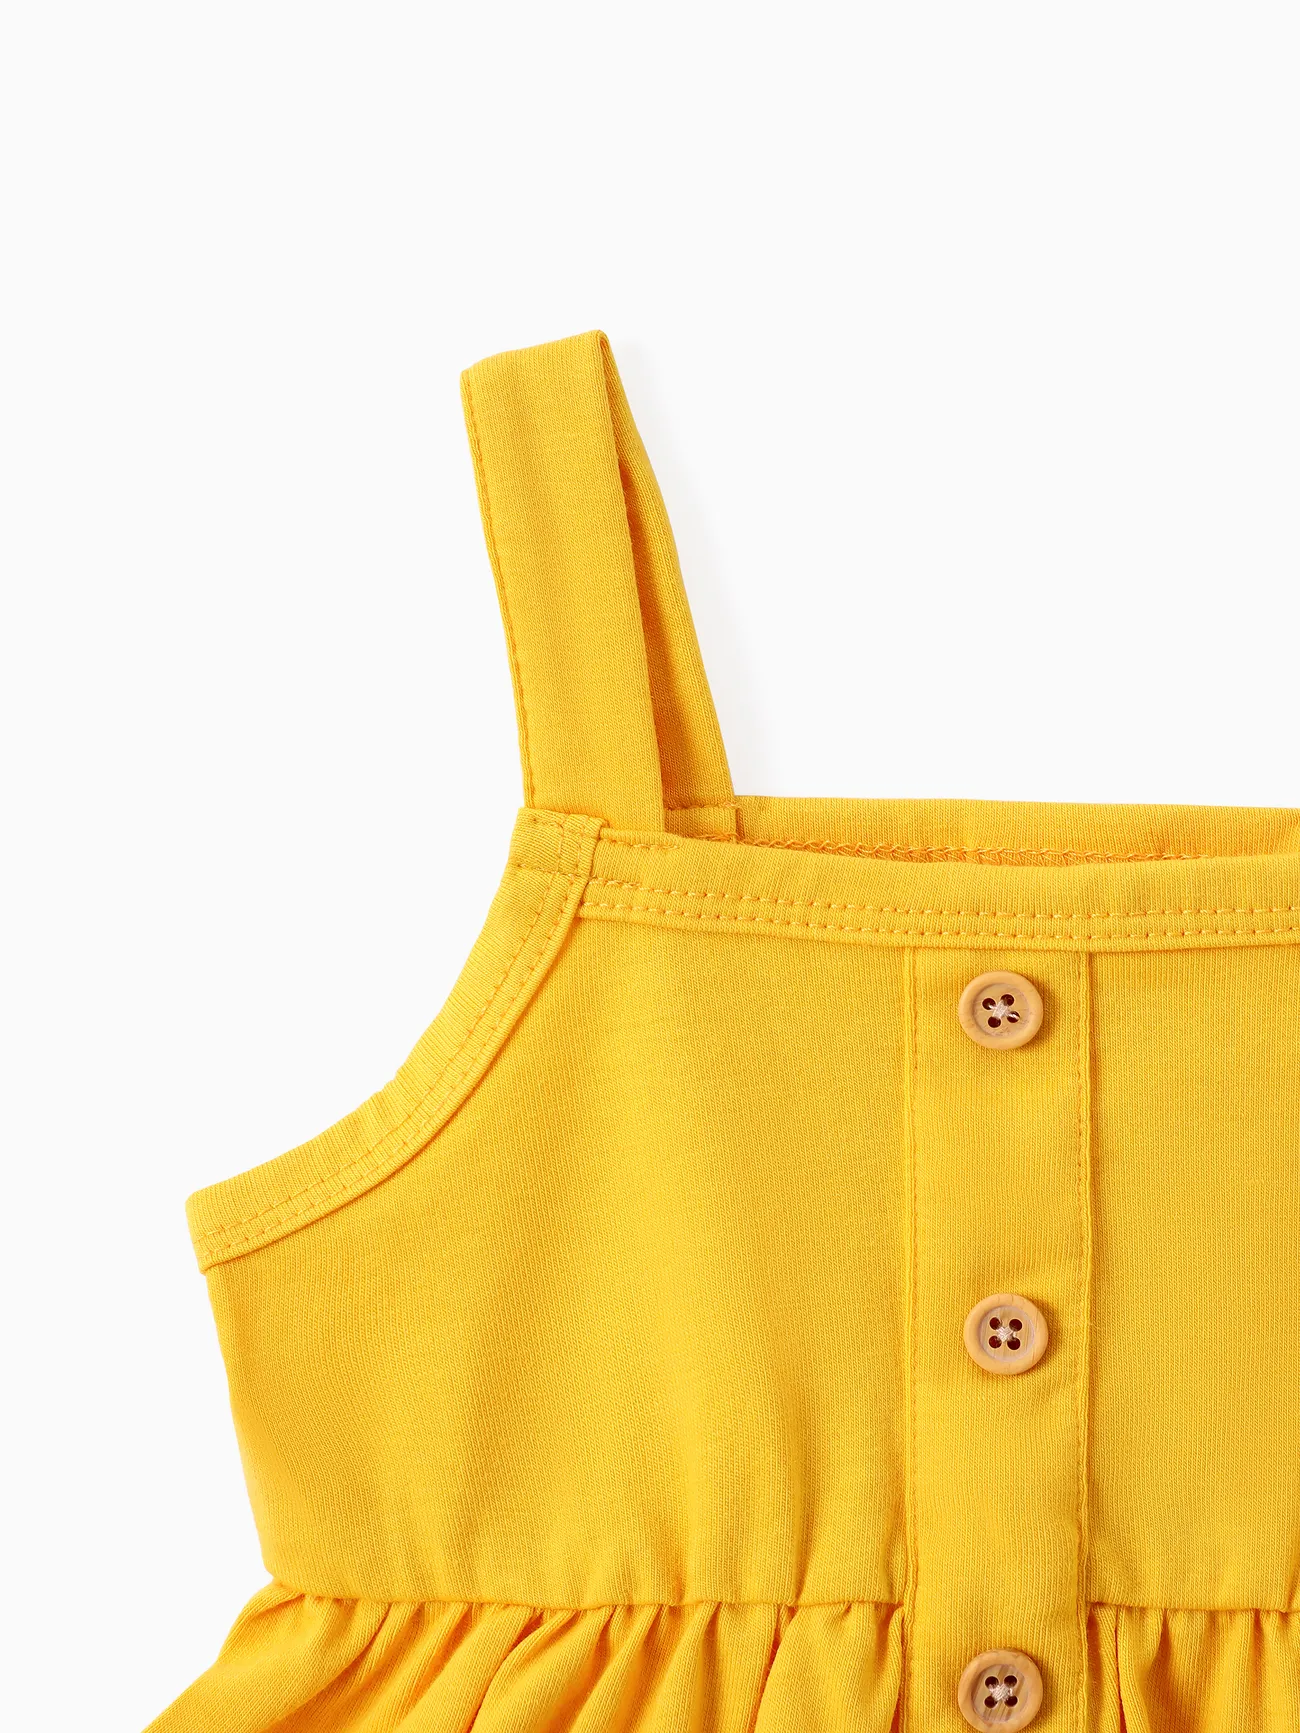 3件 嬰兒 女 鈕扣 向日葵 甜美 背心 嬰兒套裝 薑黃色 big image 1